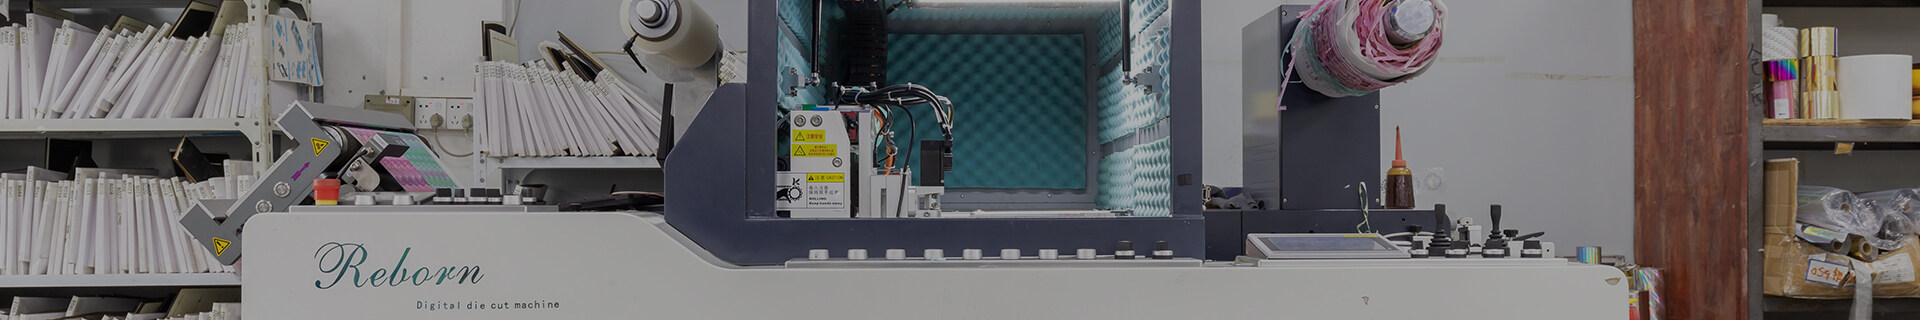 Fabricante de cinta de washi personalizada, fabricante de cintas washi